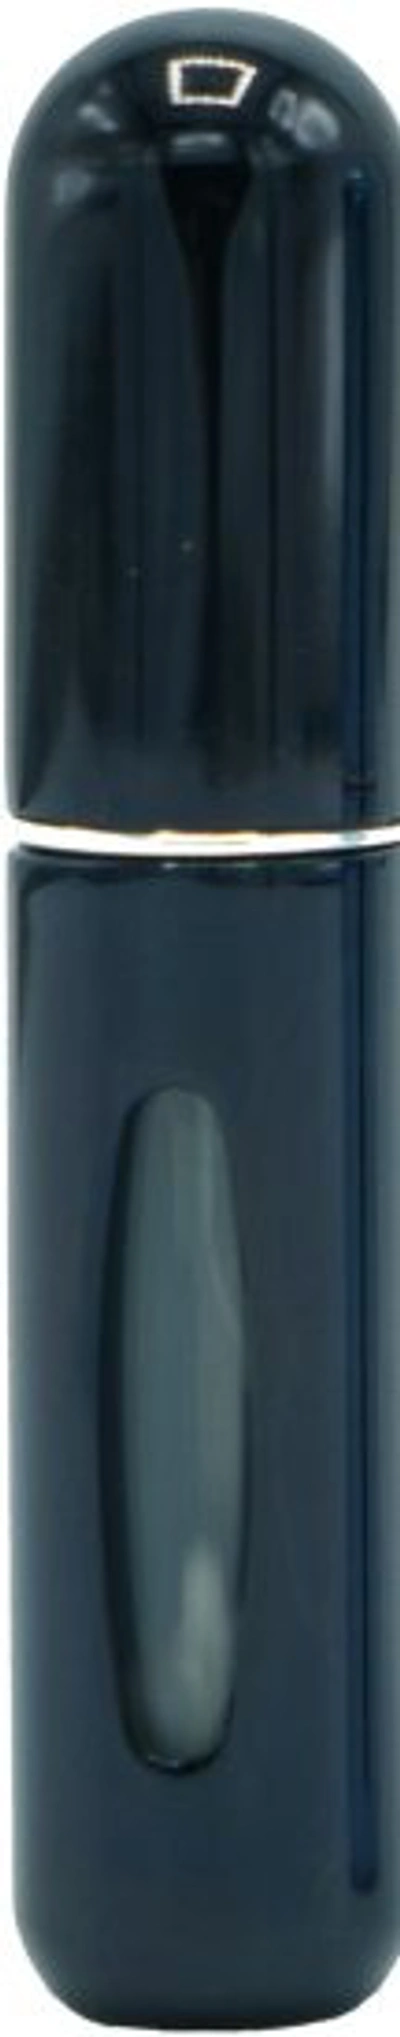 Slider Black Perfume Refill Bottle 5ml Tools 720140232153